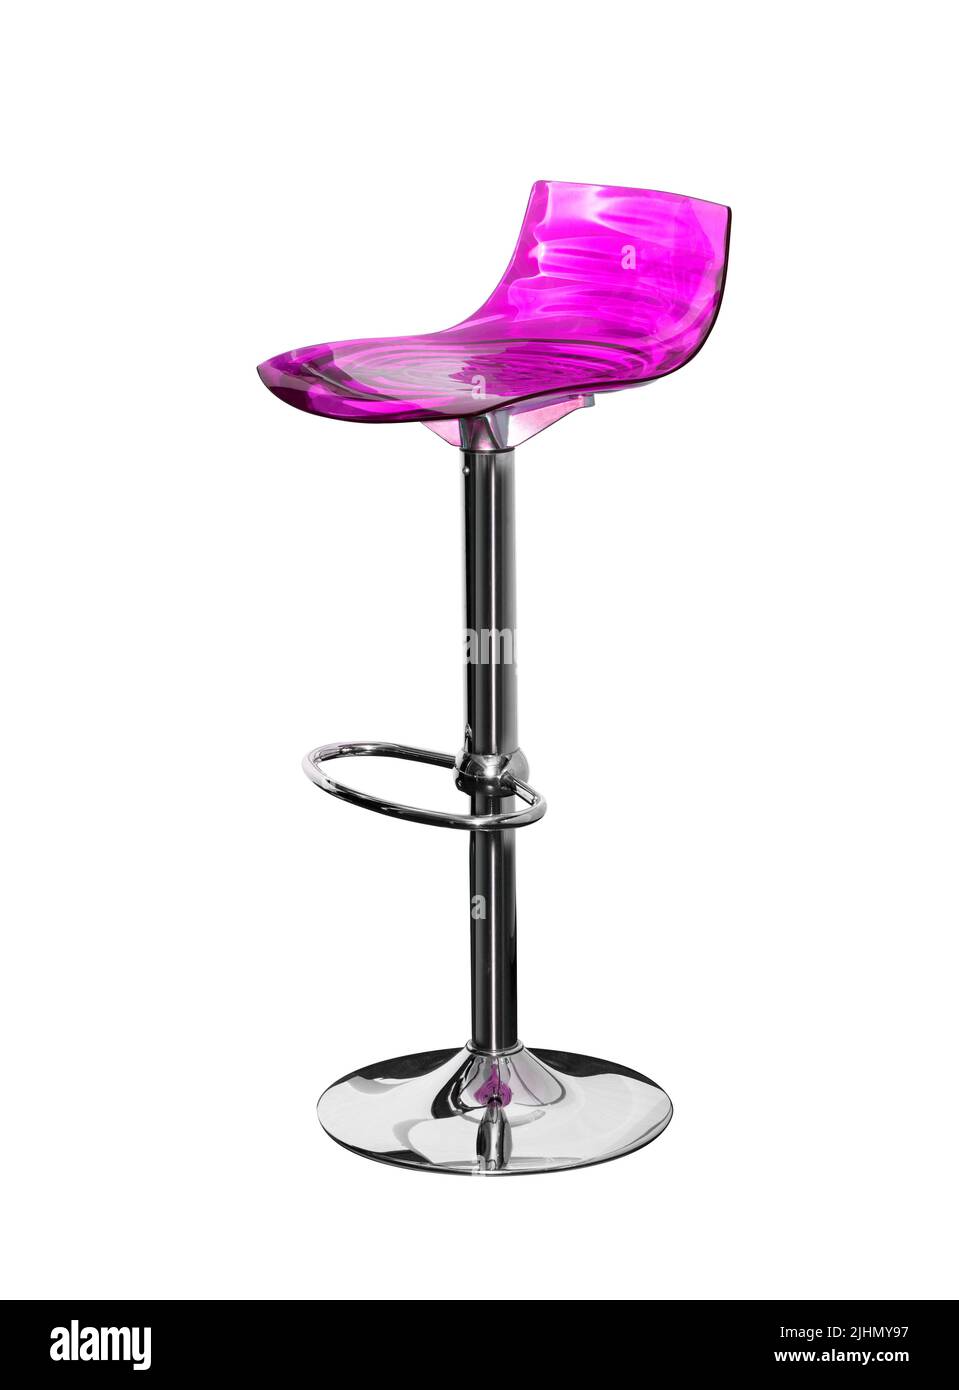 Chaise violette Banque d'images détourées - Alamy